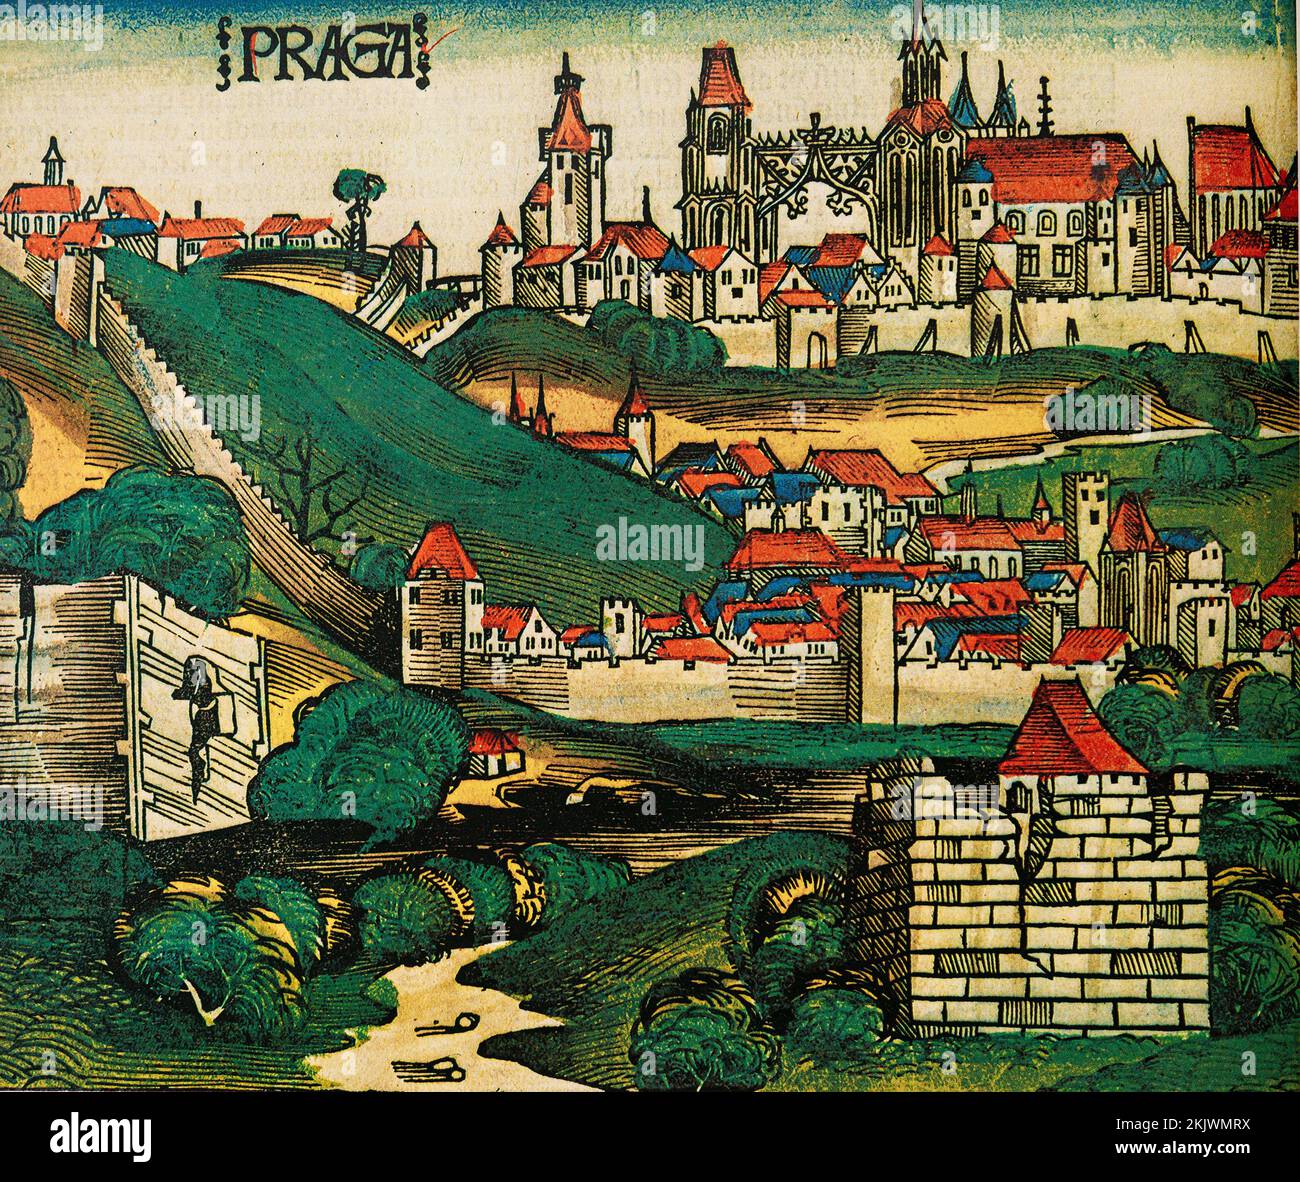 Vista de la ciudad de Praga. Grabado de Crónicas por Shartmann Schedel. La publicación se convirtió en la primera Enciclopedia Mundial de Historia y Geografía Ilustrada Foto de stock